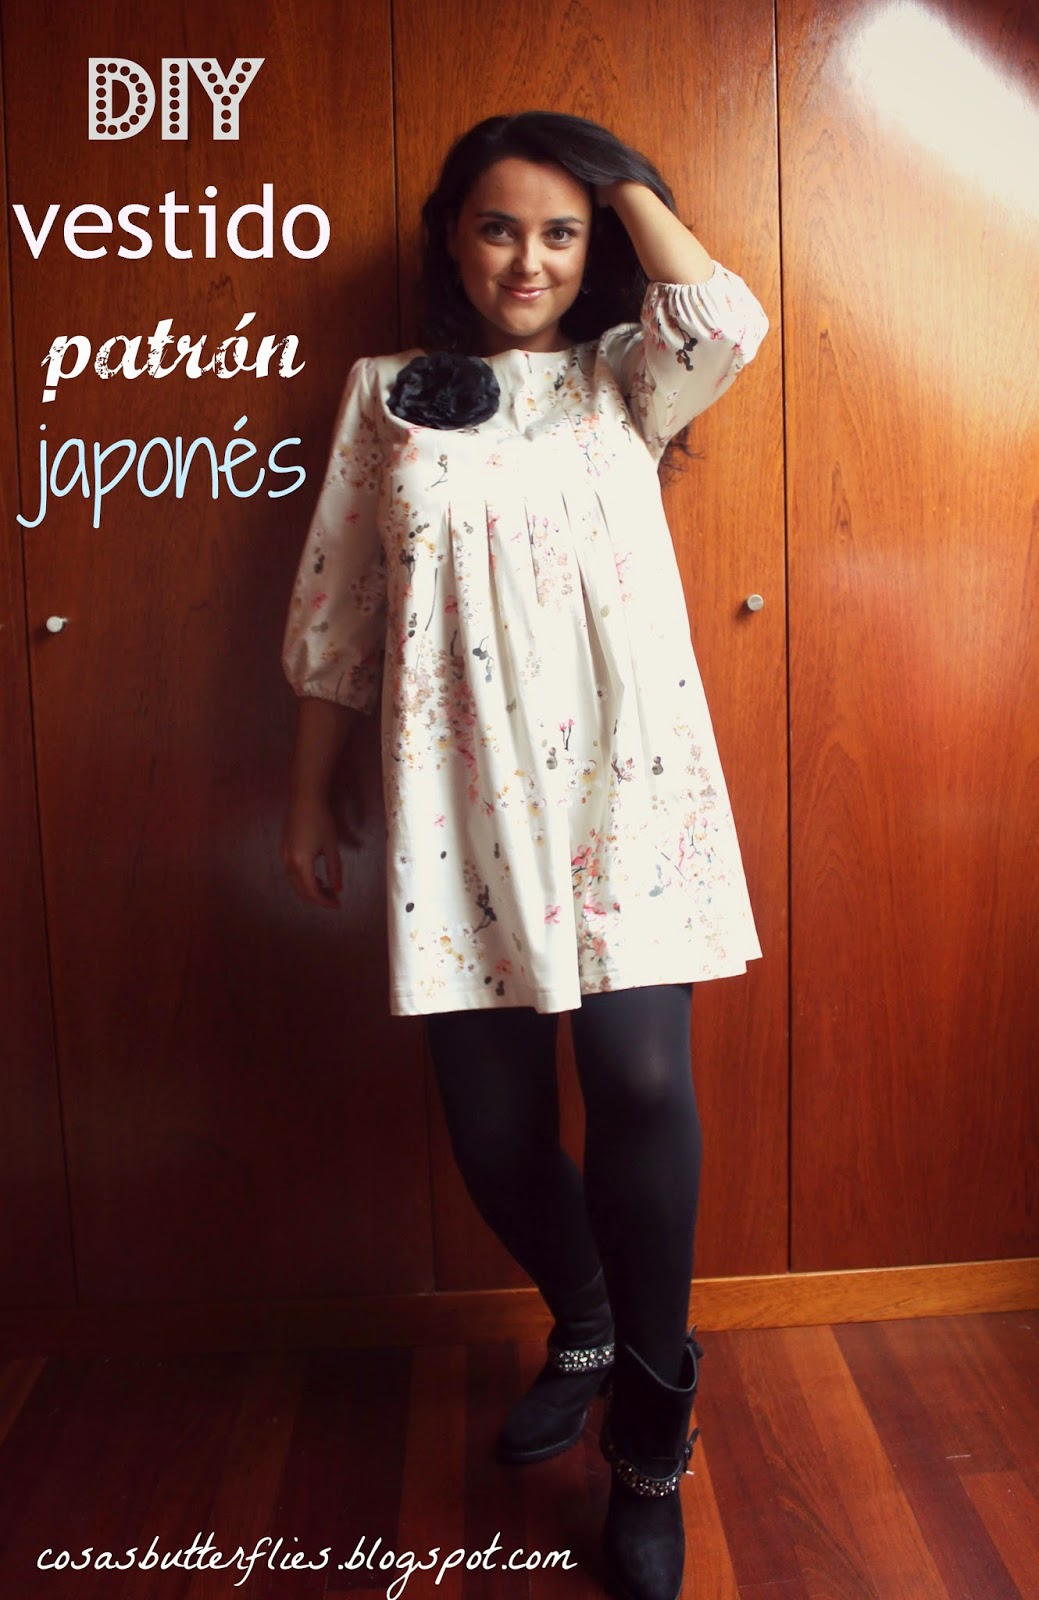 de DIY Vestido patrón japonés book 001